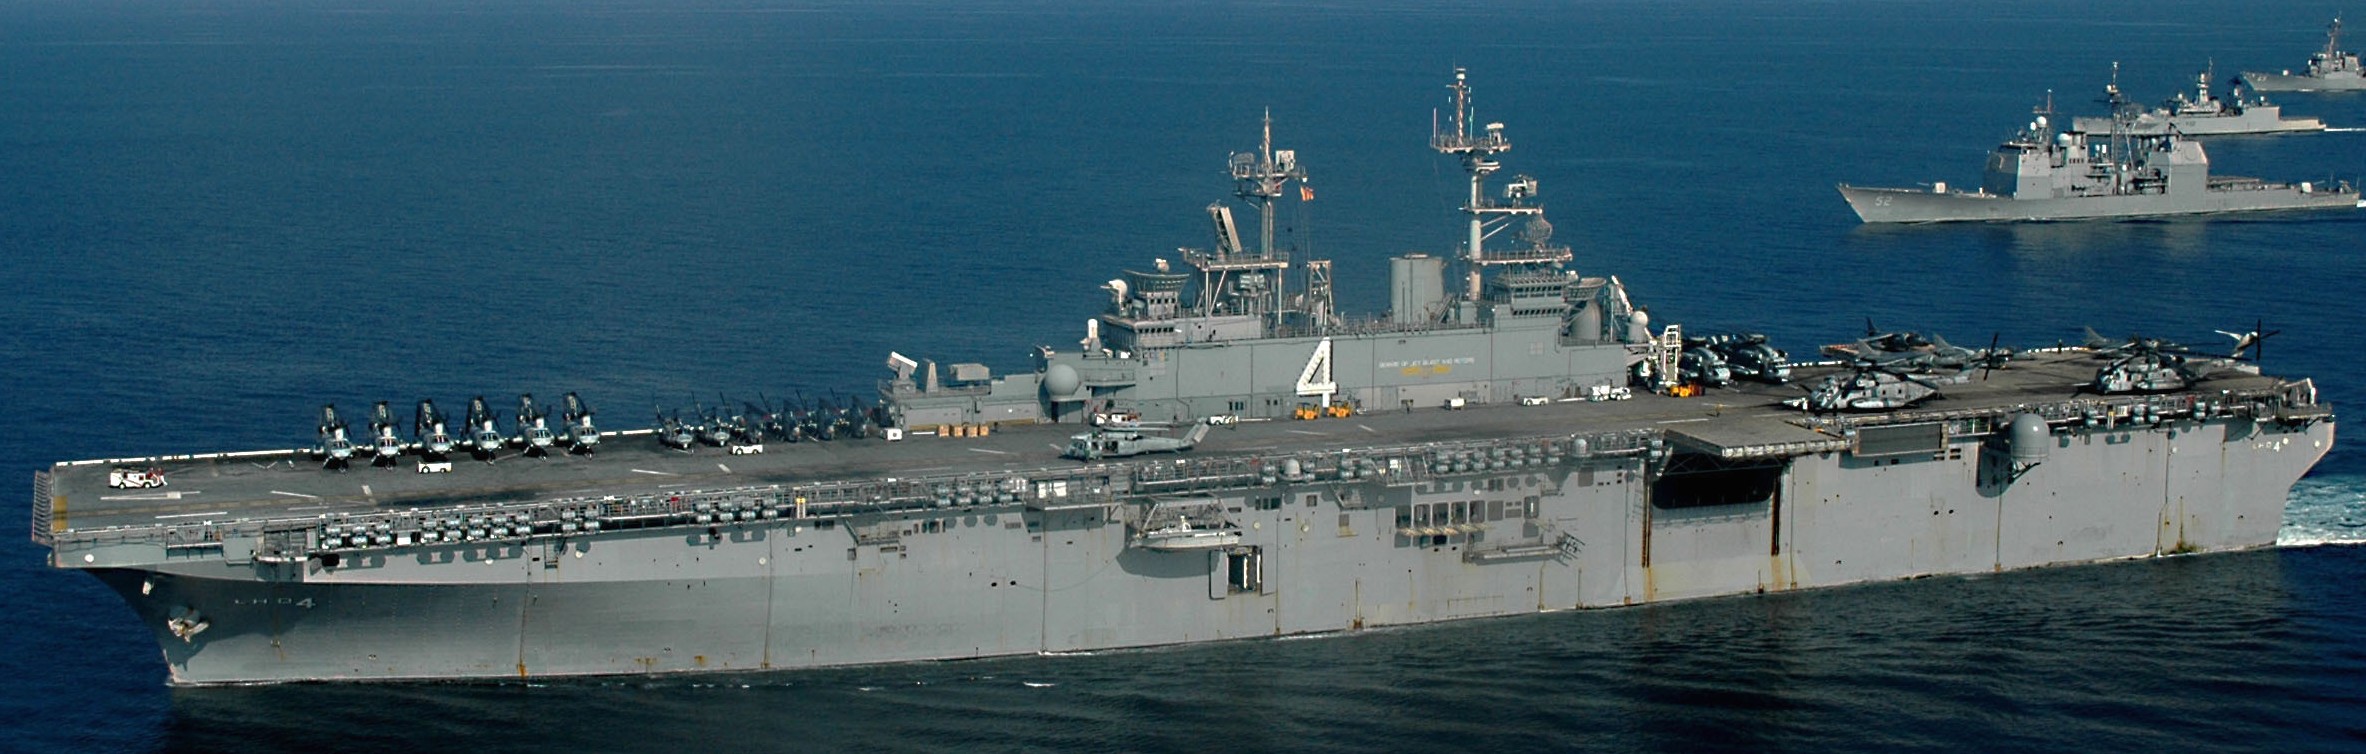 lhd-4 uss boxer wasp class amphibious assault ship dock landing us navy marines hmm-165 28